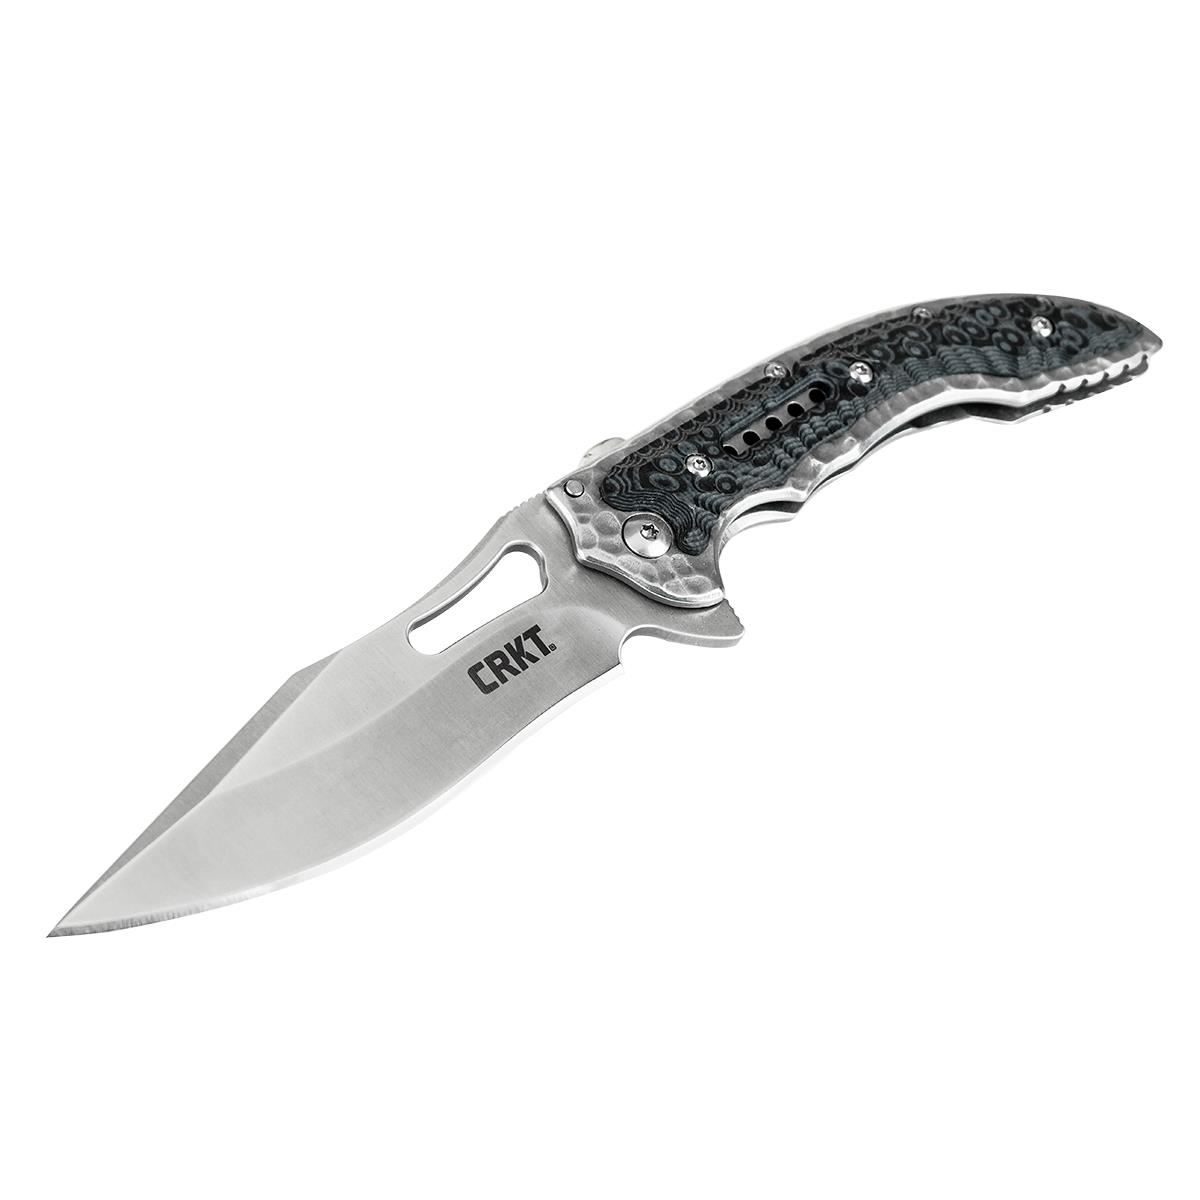 Нож Fossi складной, рук-ть сталь/G10, клинок 8Cr13MoV CRKT_5462 складной нож leatherman skeletool kbx